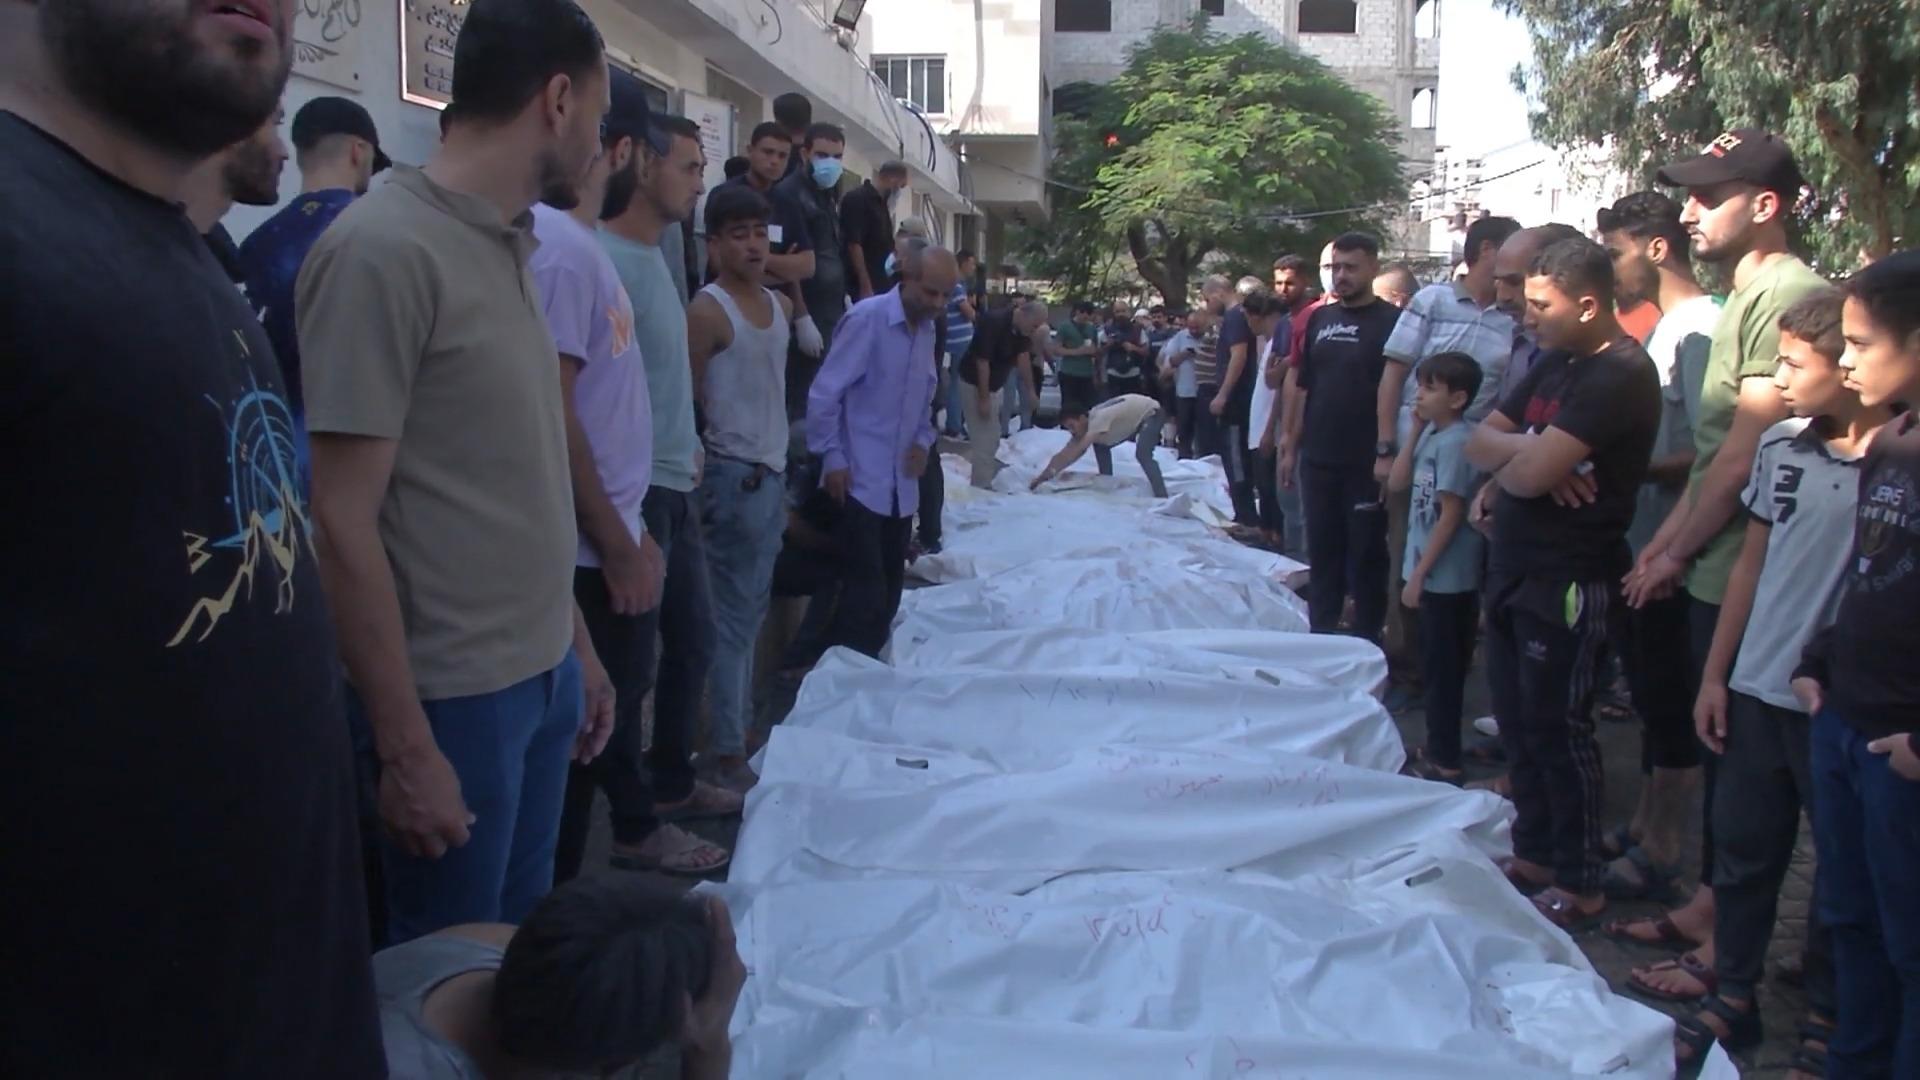 Gaza: En primer lugar, los hospitales no pueden tratar a los heridos en la situación actual de Israel